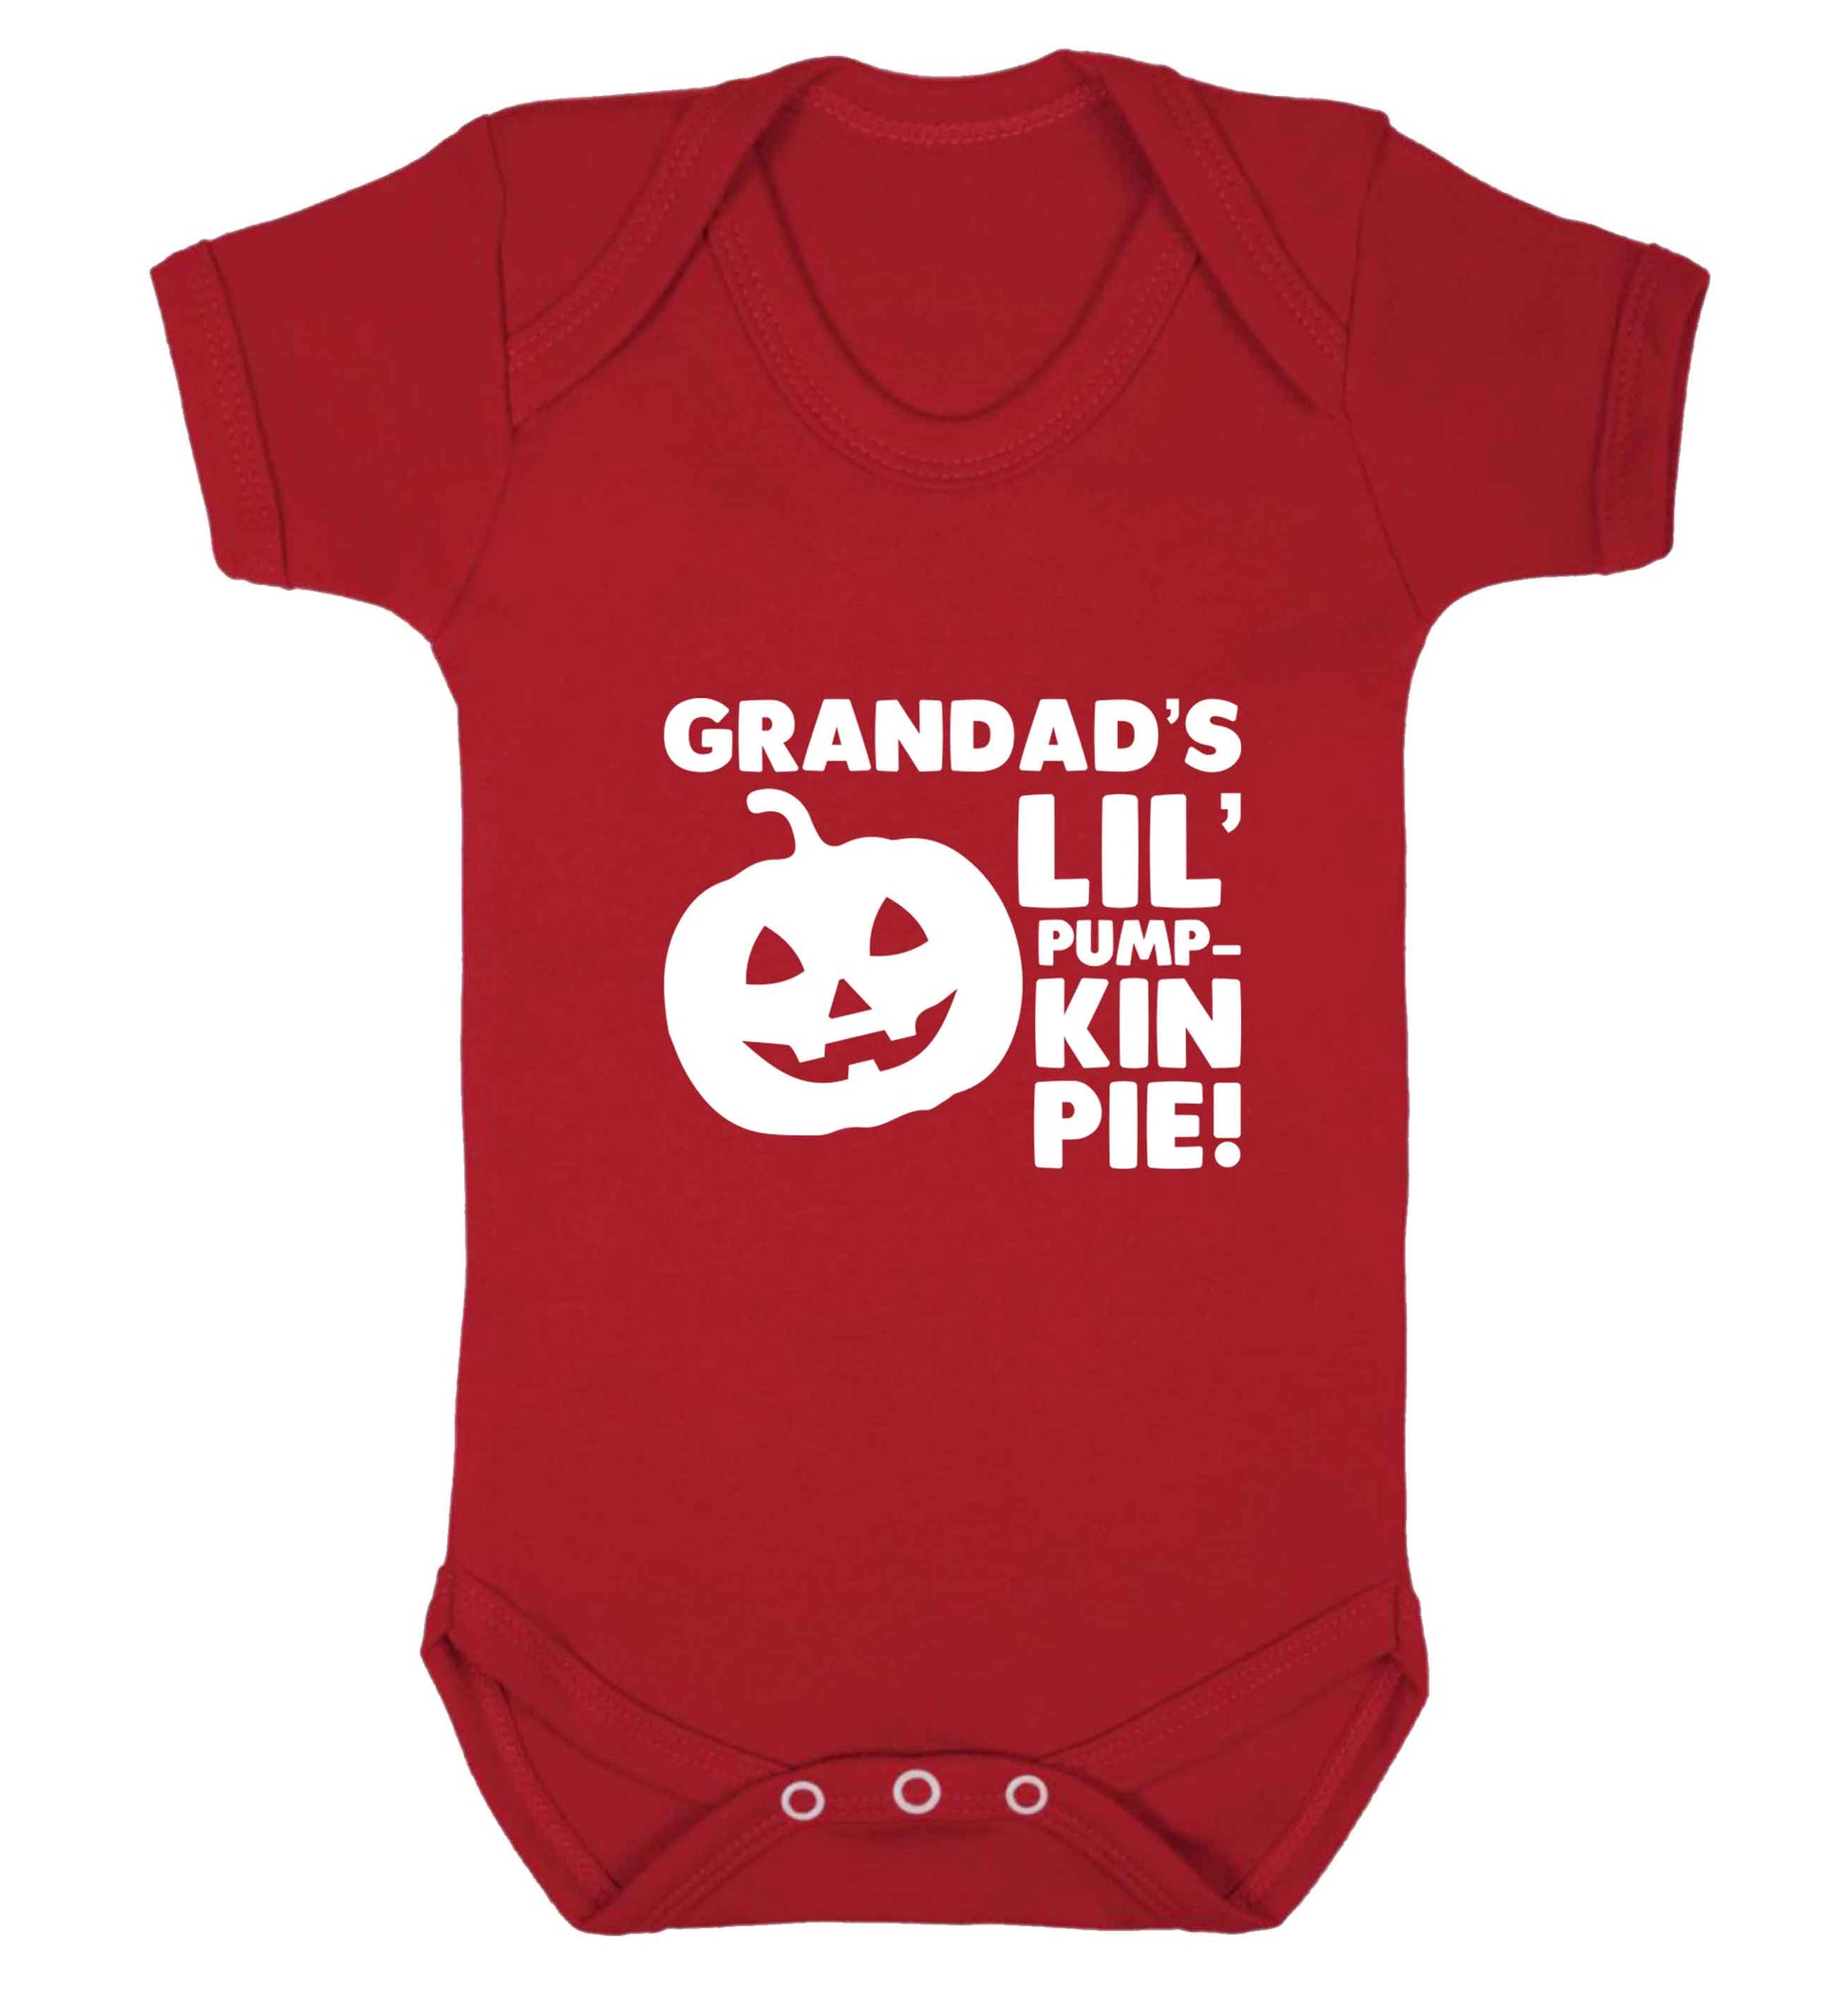 Grandad's lil' pumpkin pie baby vest red 18-24 months